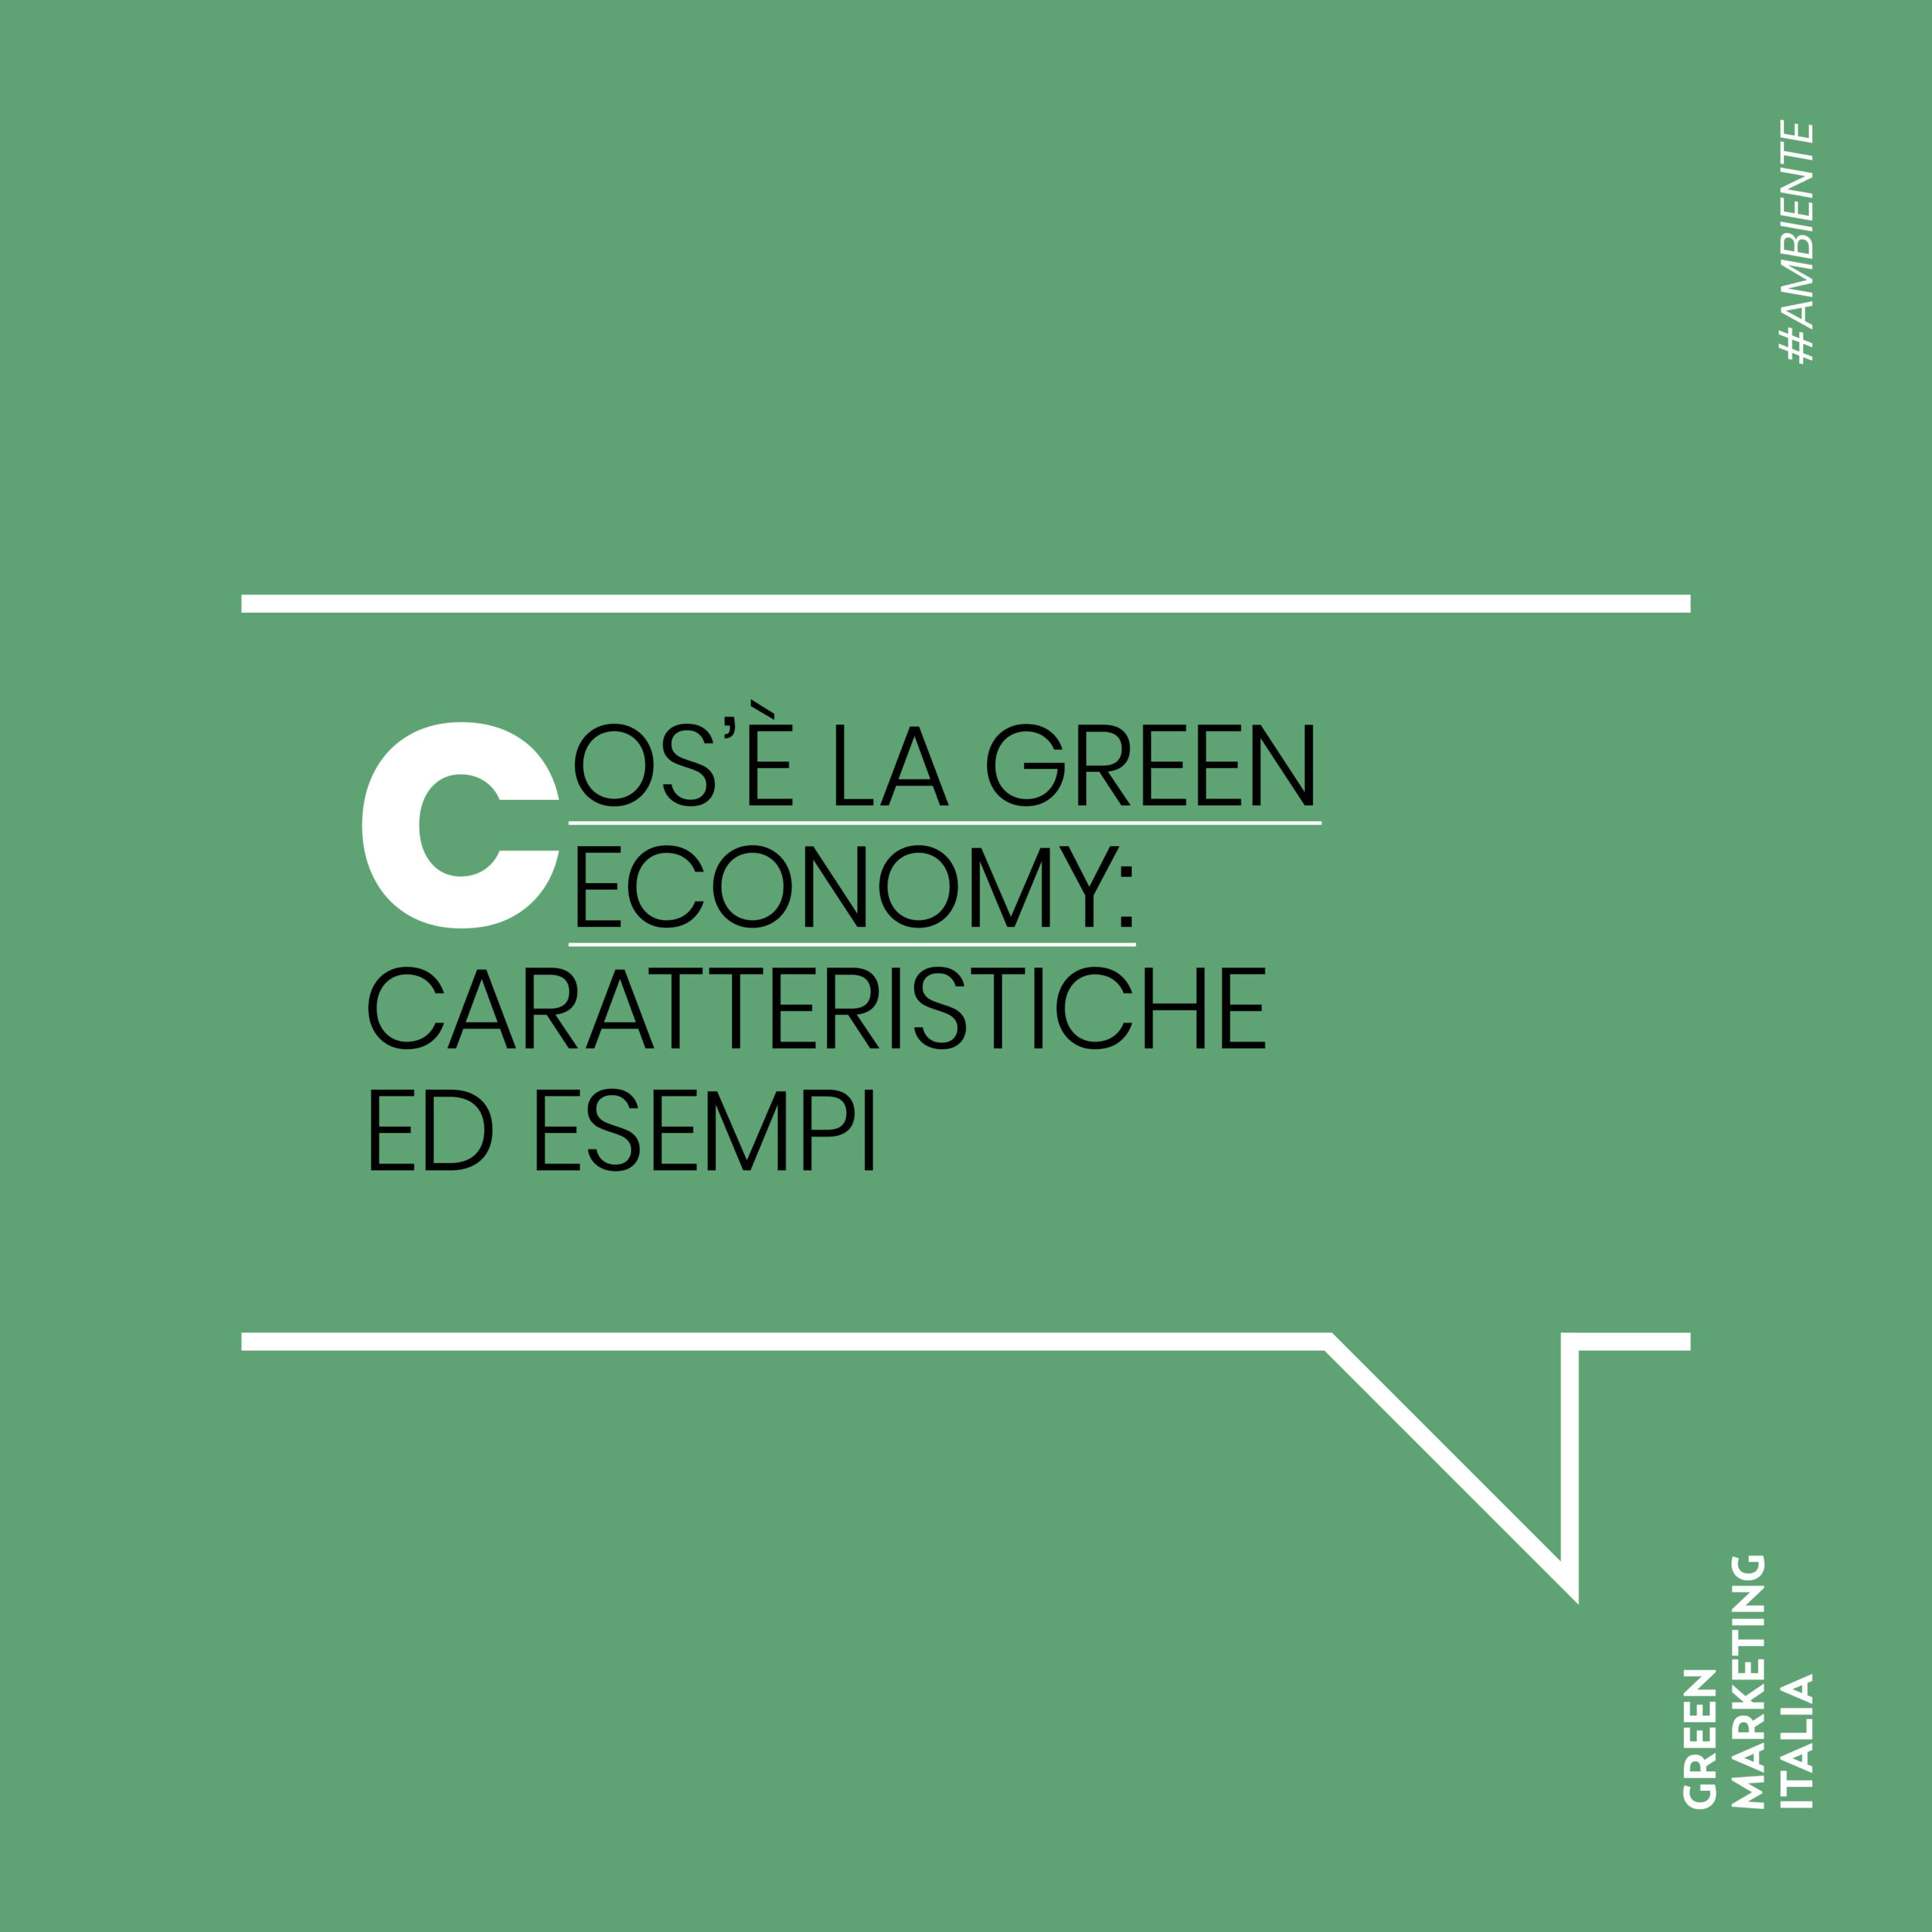 Cos'è la green economy